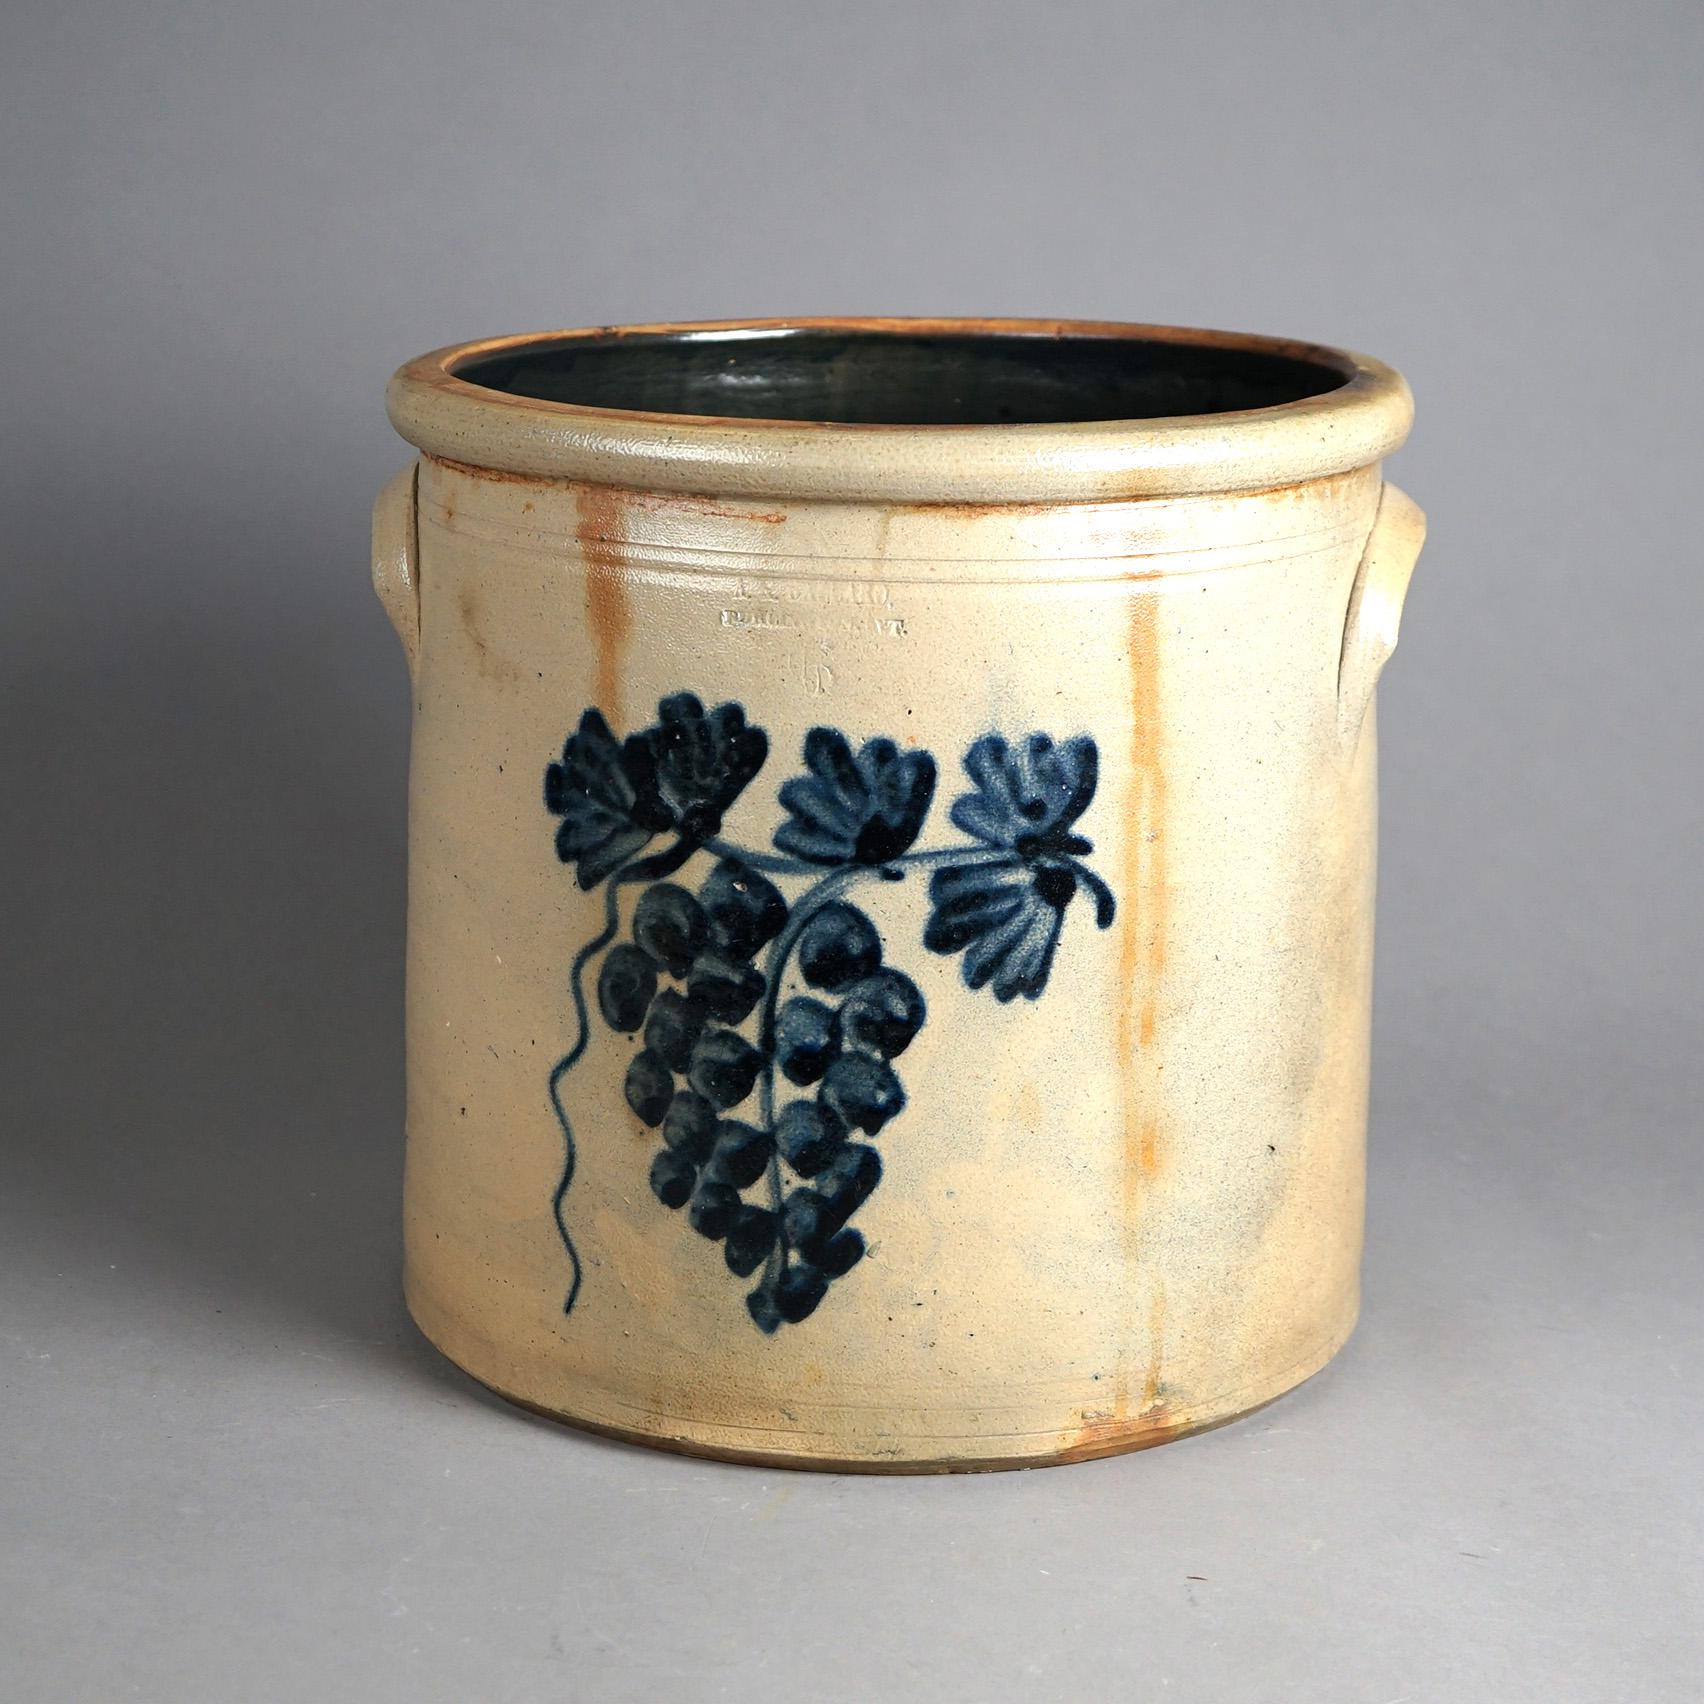 Primitive Antique Burlington Salt Glazed Blue Decorated Stoneware Crock with Grapes c1870 For Sale